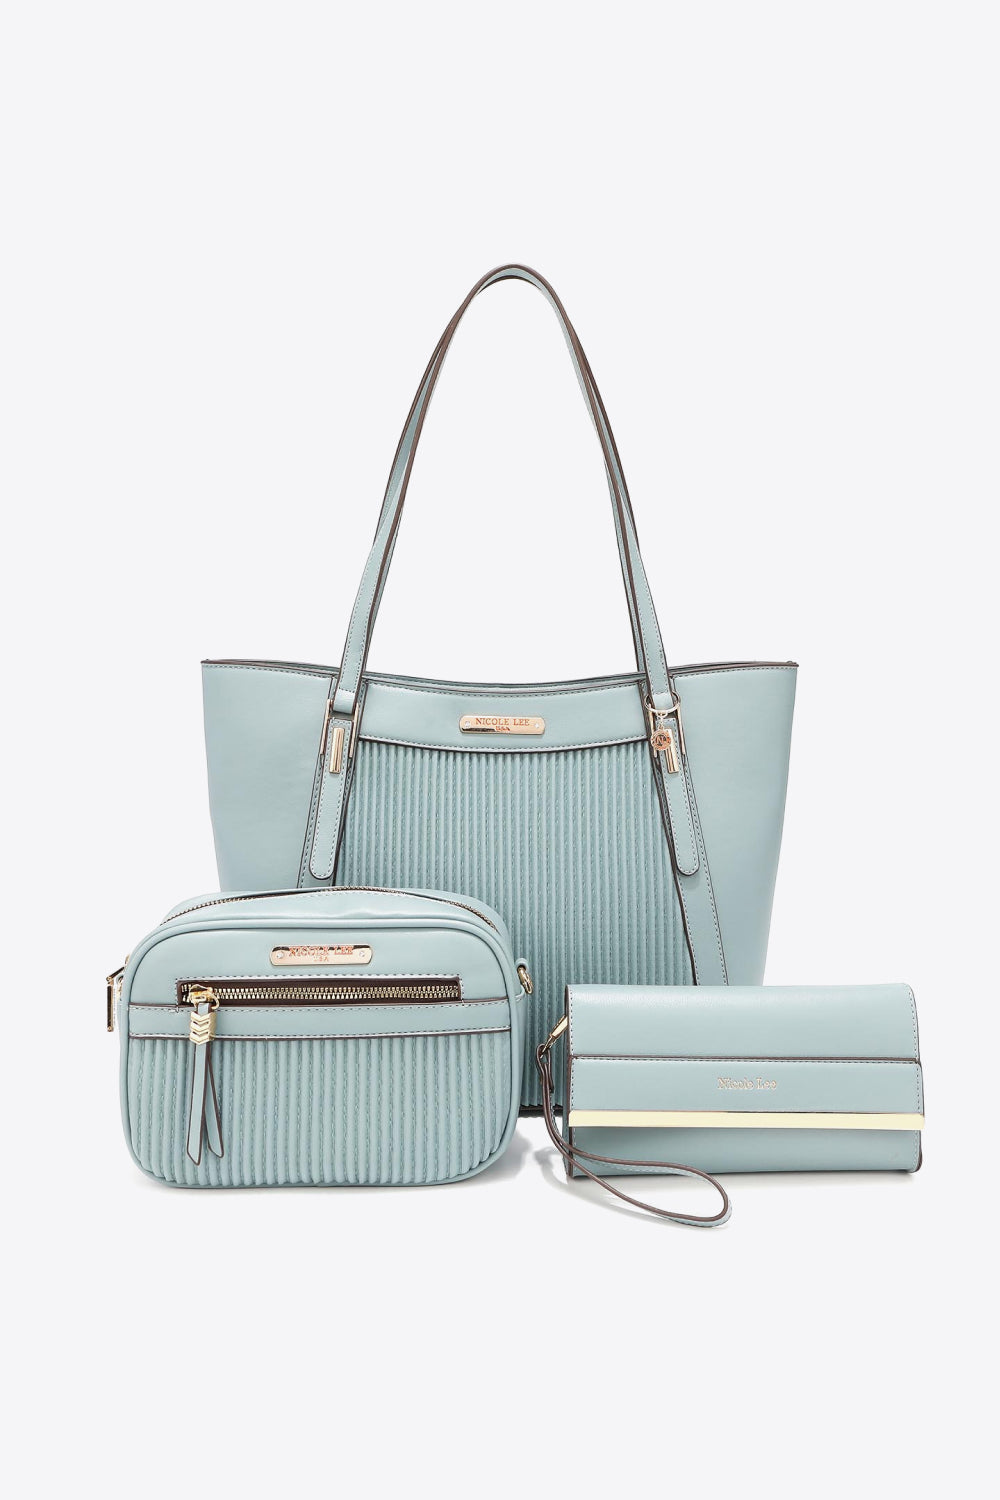 Feeling Right Handbag Set in Cream, Light Gray, & Dusty Blue